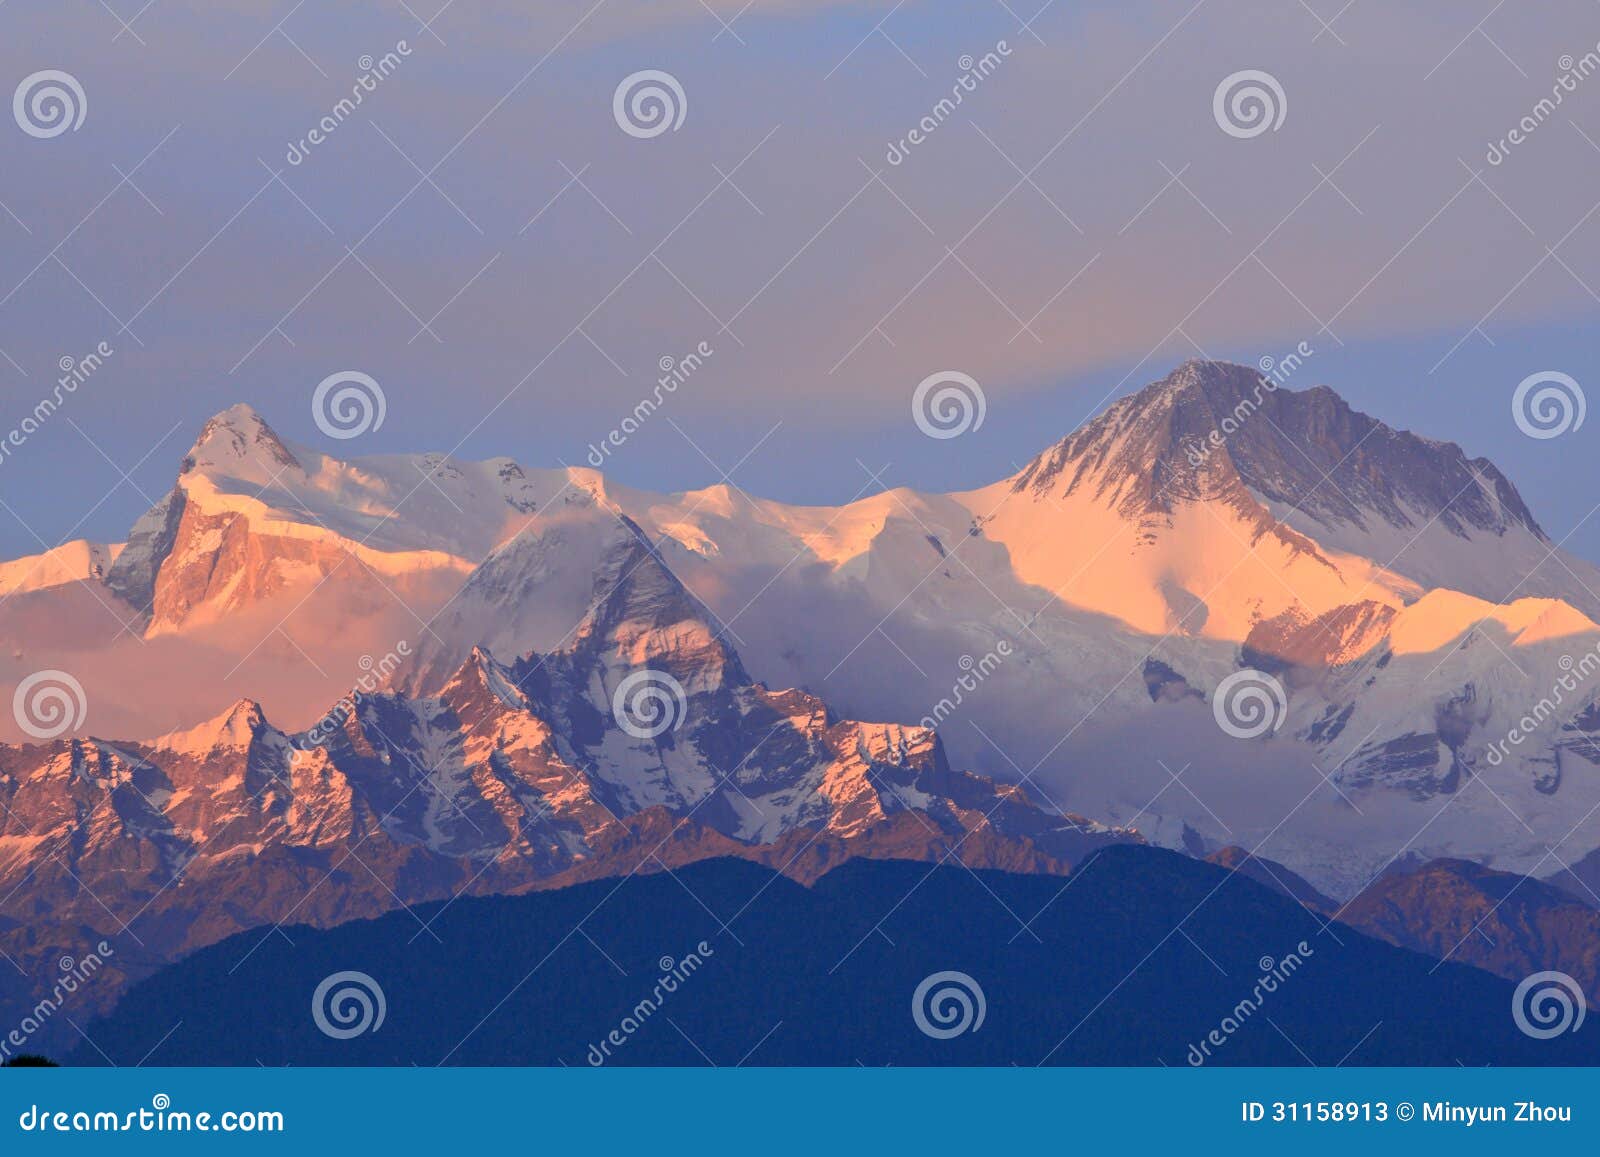 himalayan mountain,pokhara,nepal